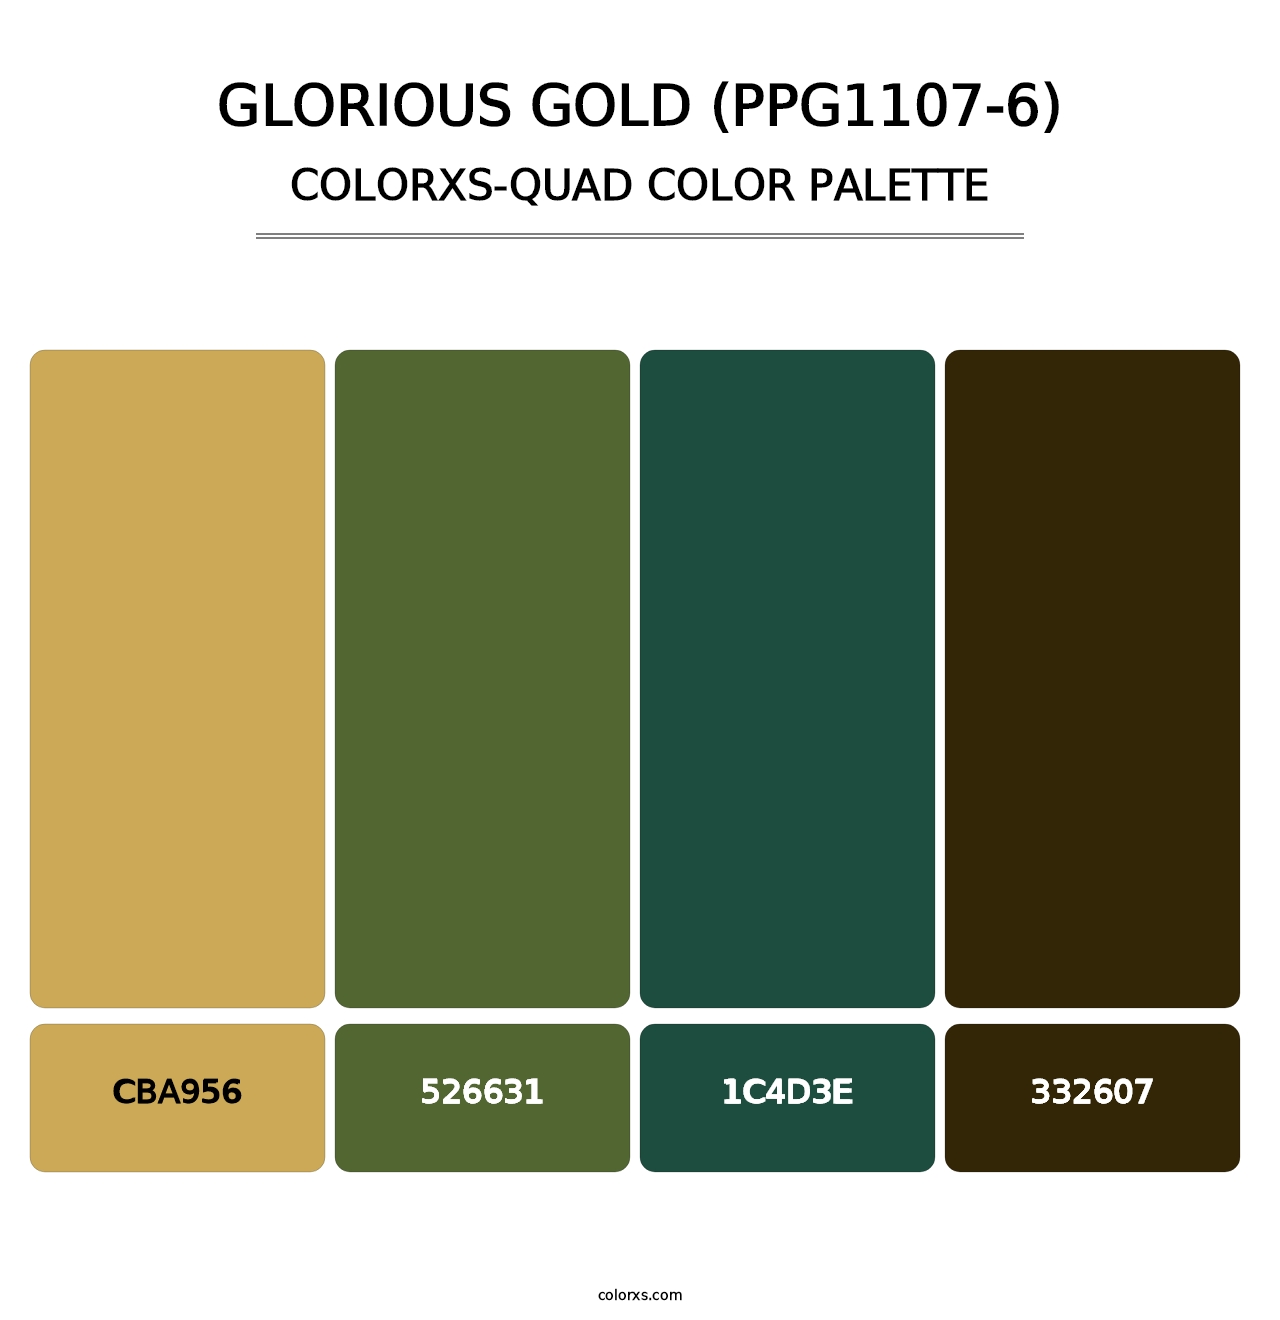 Glorious Gold (PPG1107-6) - Colorxs Quad Palette